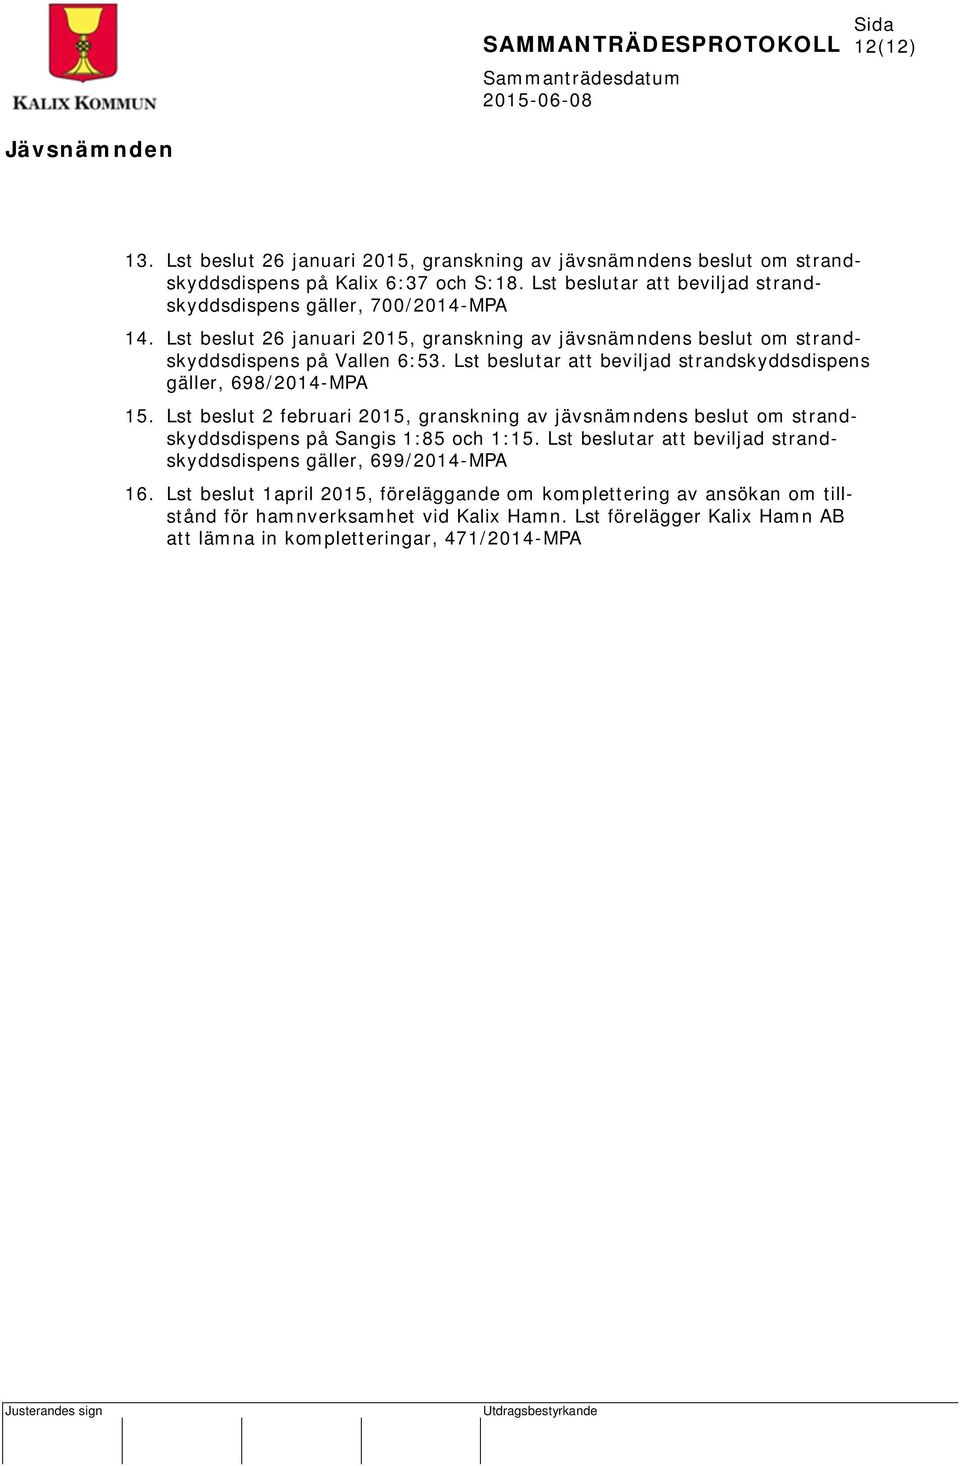 Lst beslutar att beviljad strandskyddsdispens gäller, 698/2014-MPA 15. Lst beslut 2 februari 2015, granskning av jävsnämndens beslut om strandskyddsdispens på Sangis 1:85 och 1:15.